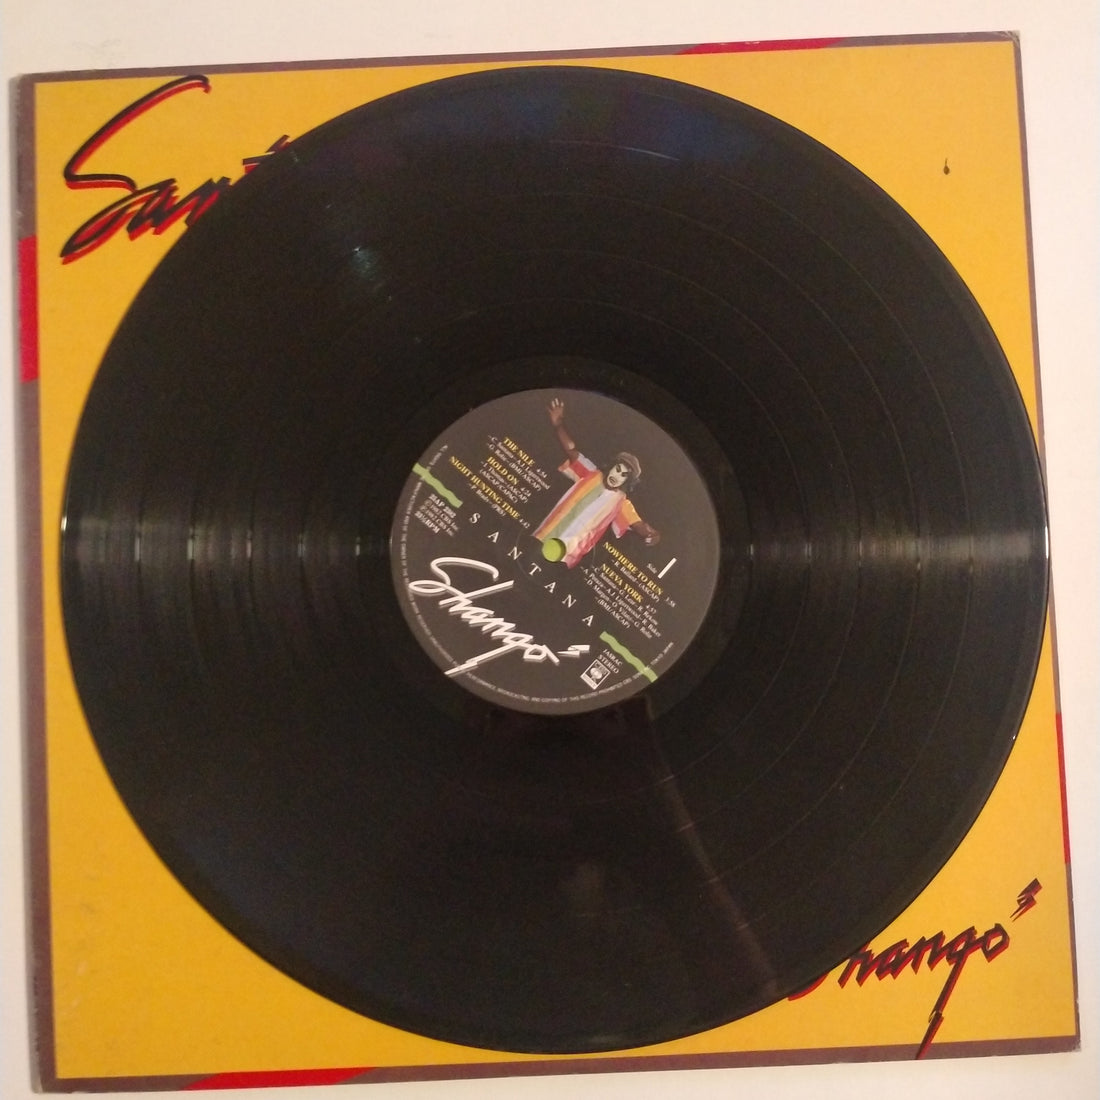 Santana - Shango (Vinyl) (VG+)